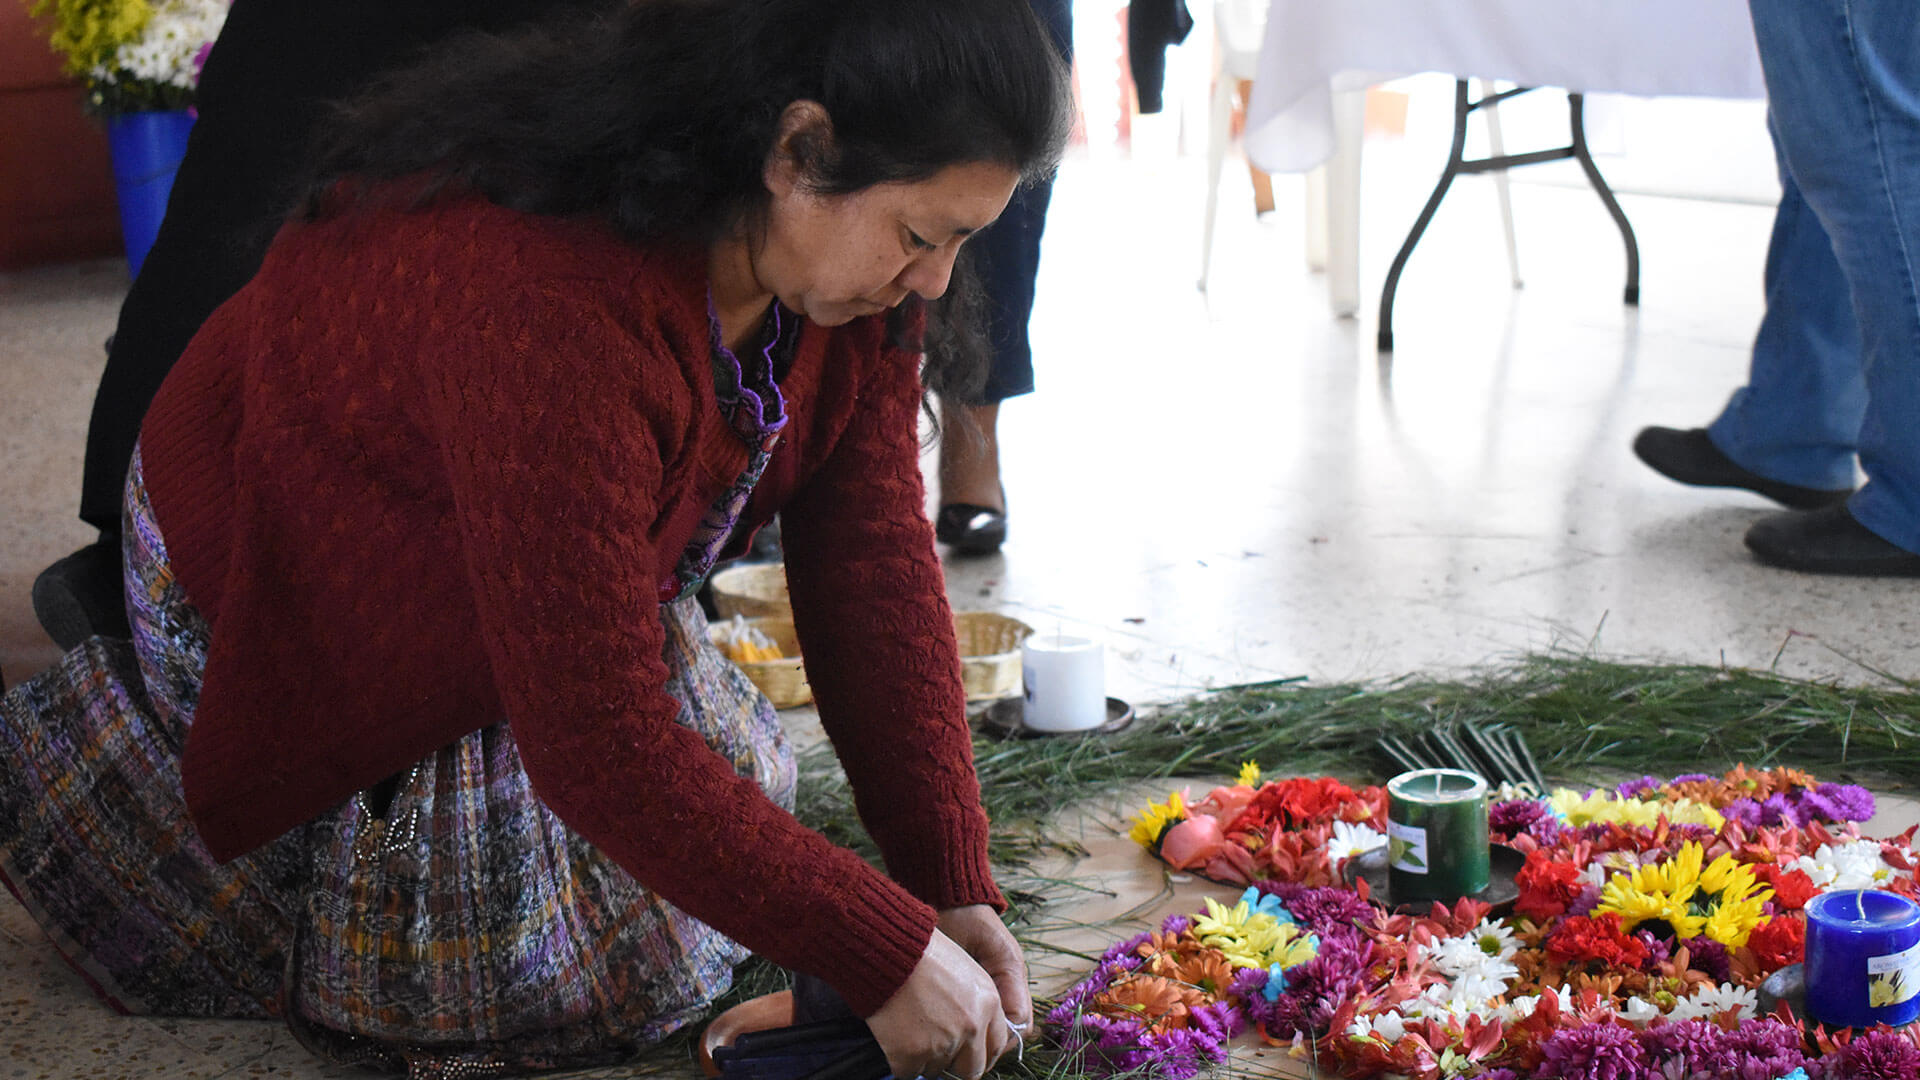 Eine Person legt Blumenkränze und Kerzen auf den Boden, sie kniet dabei.